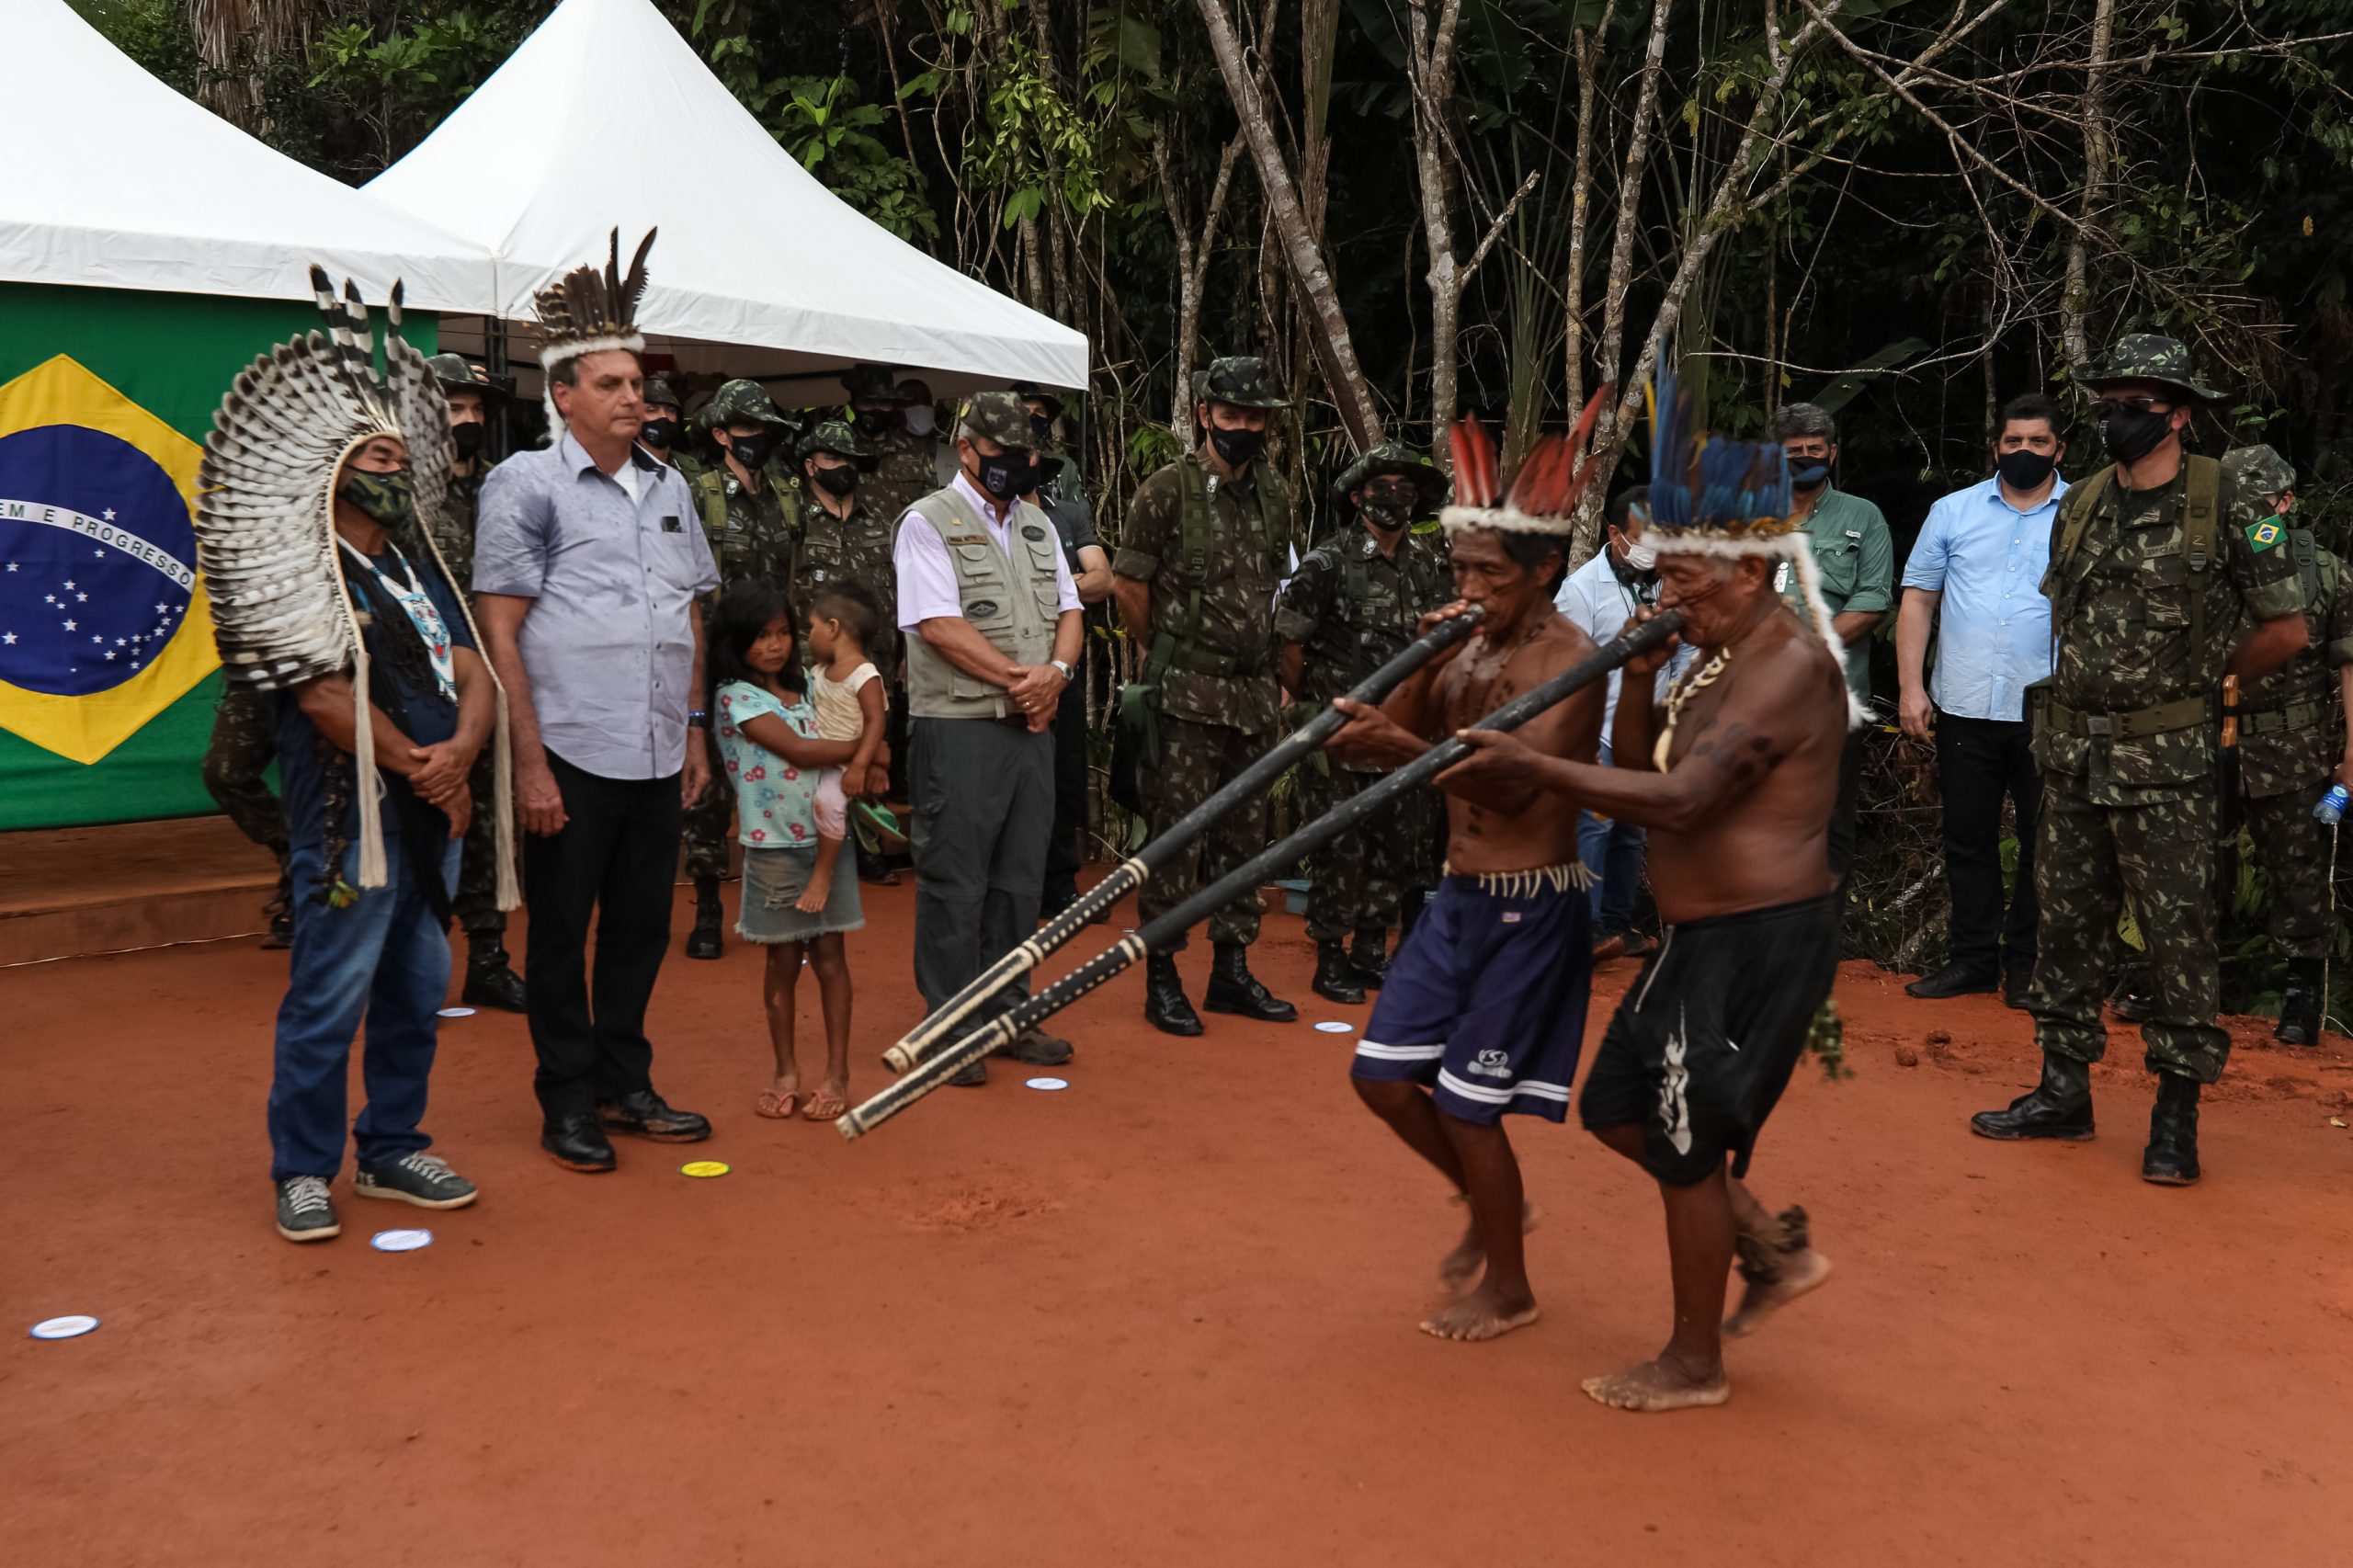 Sob clima de festa, indígenas recebem Bolsonaro com euforia e muitas fotos 18